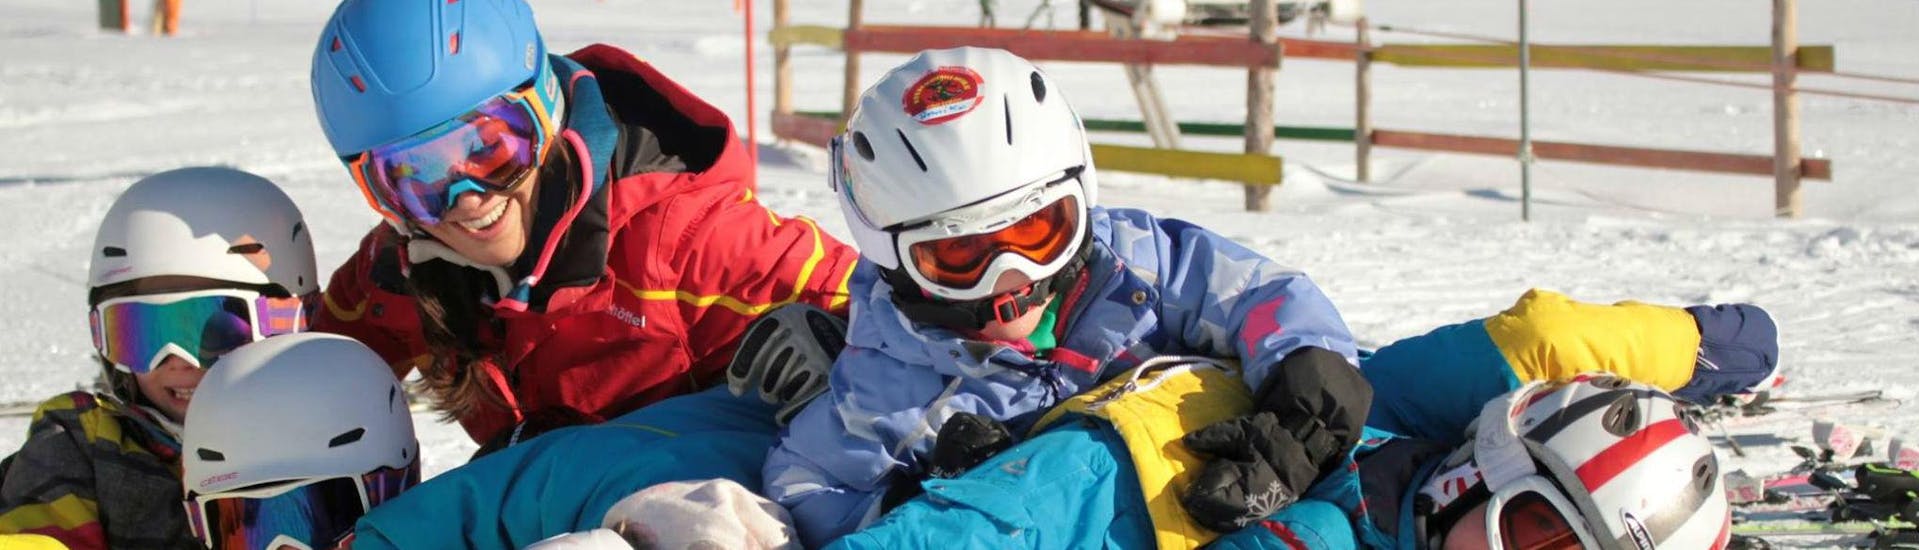 Cours de ski Enfants dès 3 ans - Avancé.